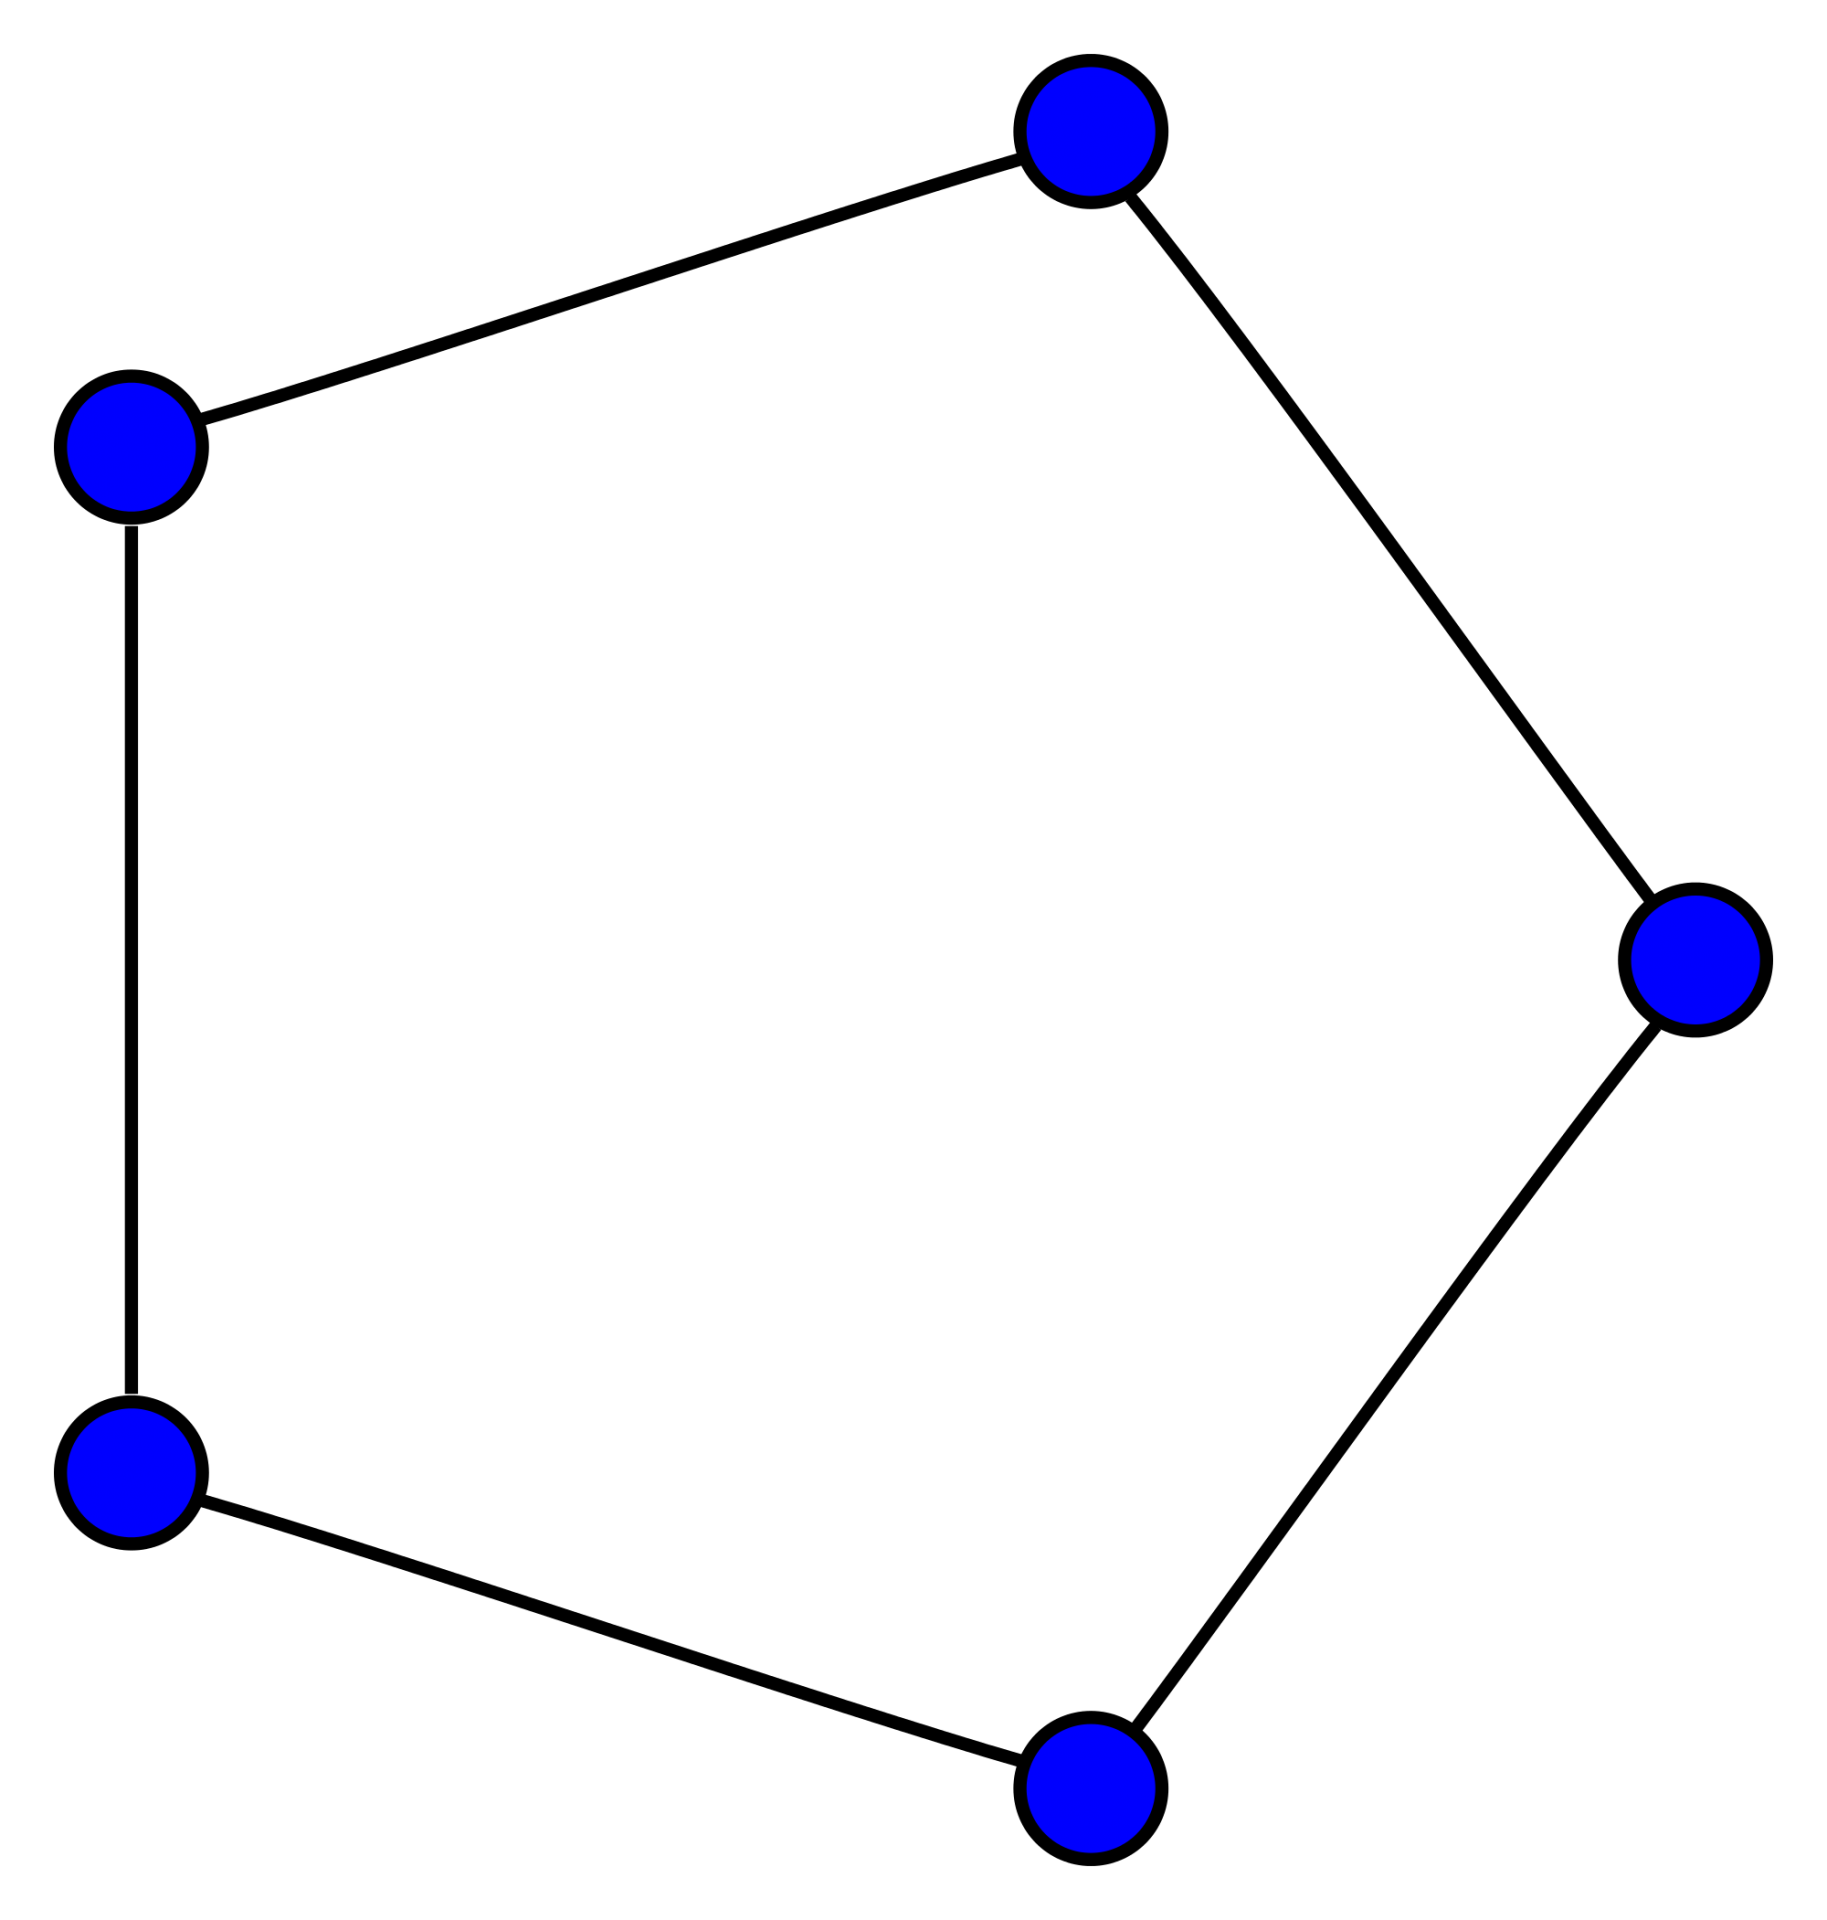 Graf – Kružnica - Grafové algoritmy